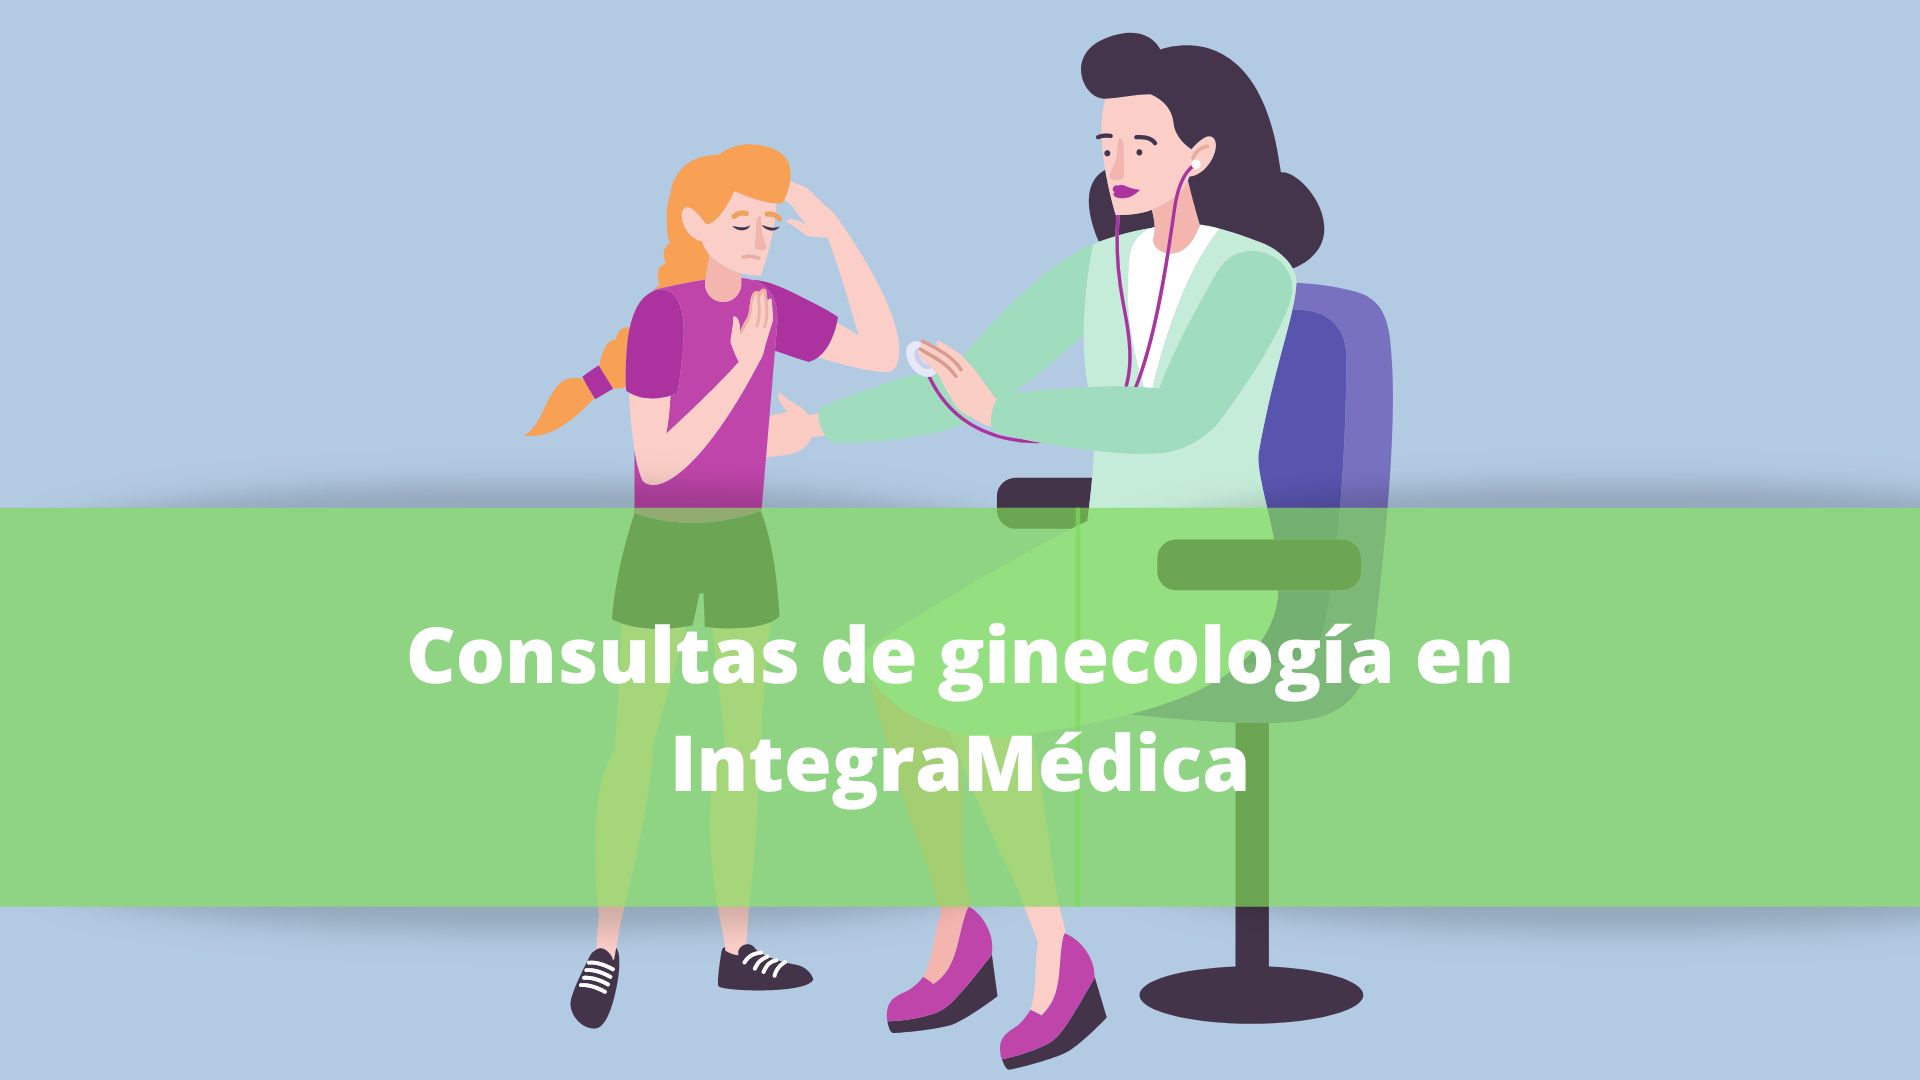 Servicio de ginecología en IntegraMédica